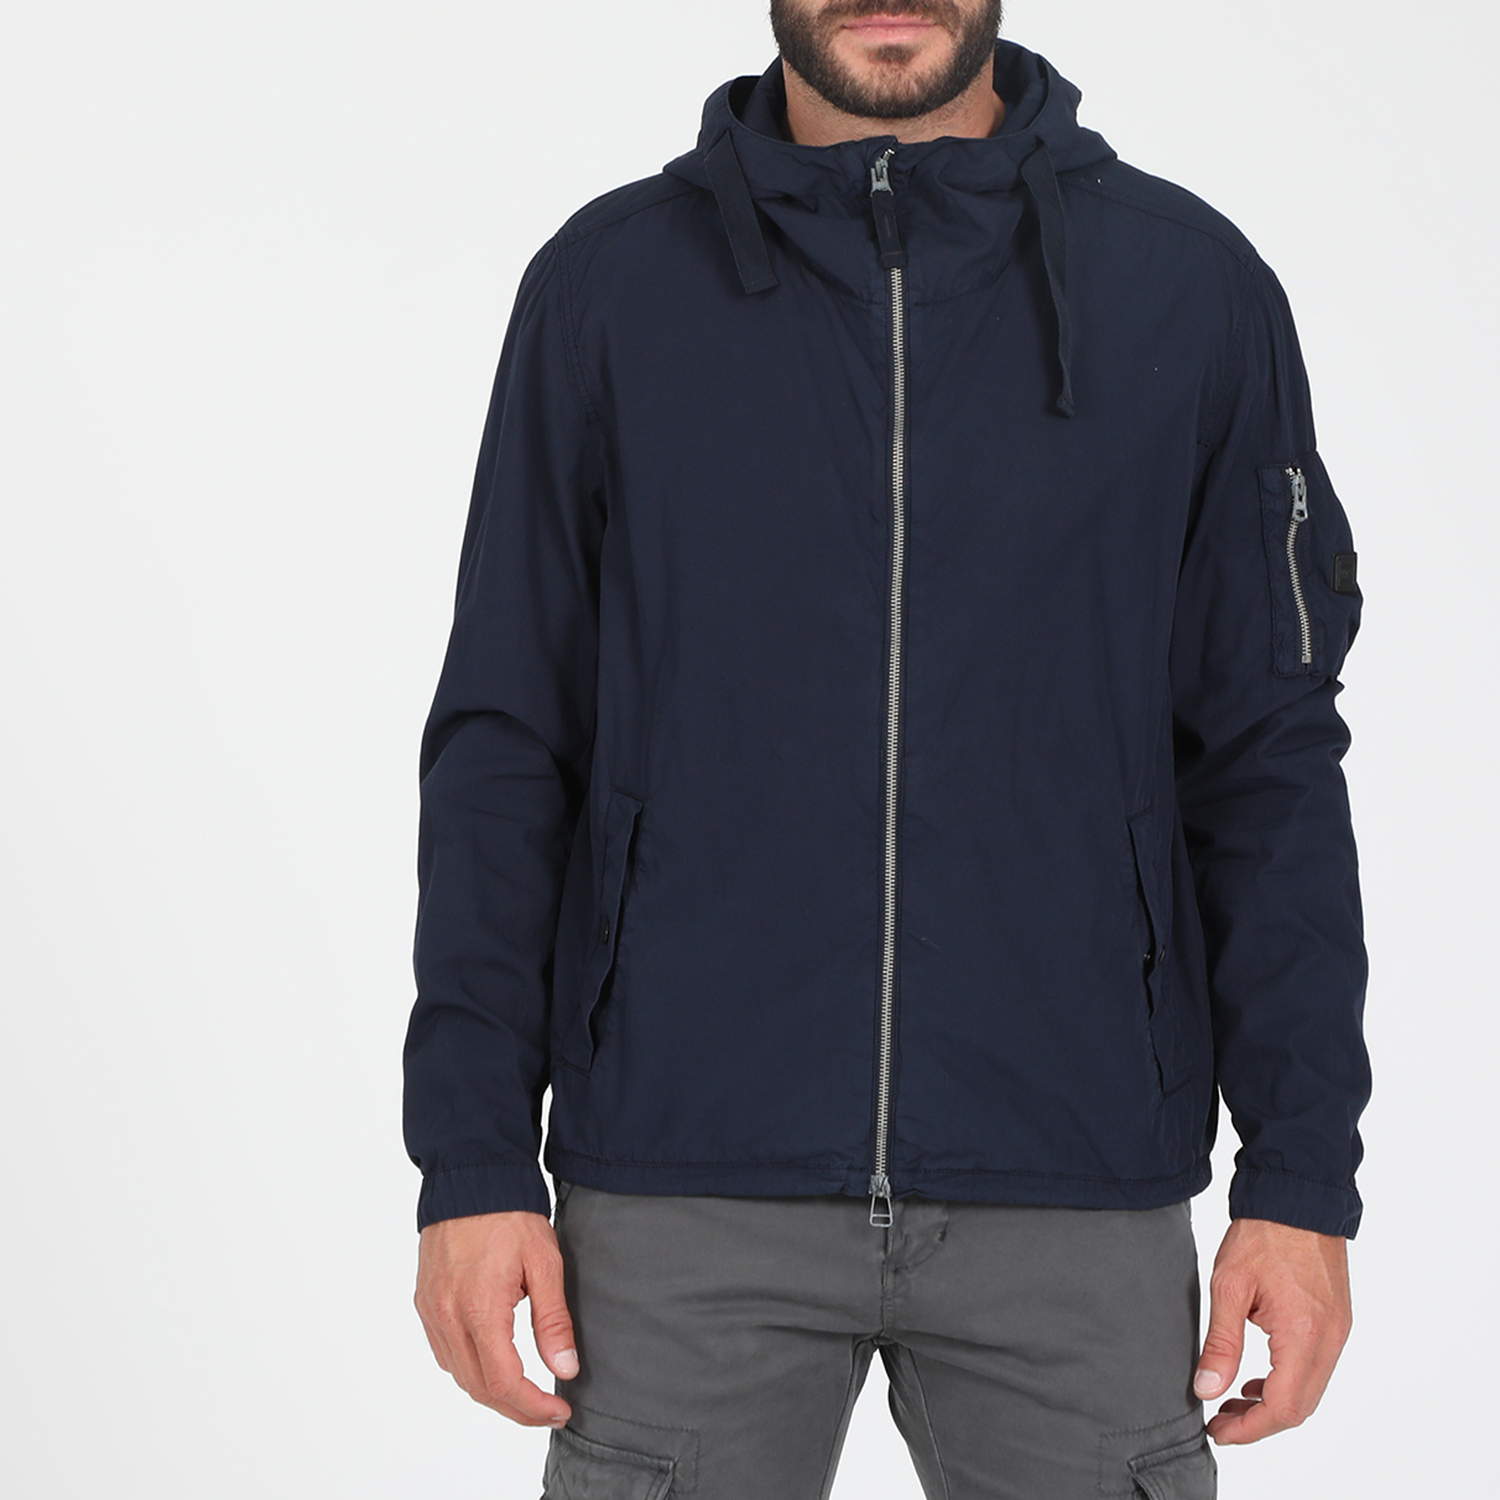 Ανδρικά/Ρούχα/Πανωφόρια/Τζάκετς BOSS - Ανδρικό jacket BOSS Olvaro-D Jacket μπλε